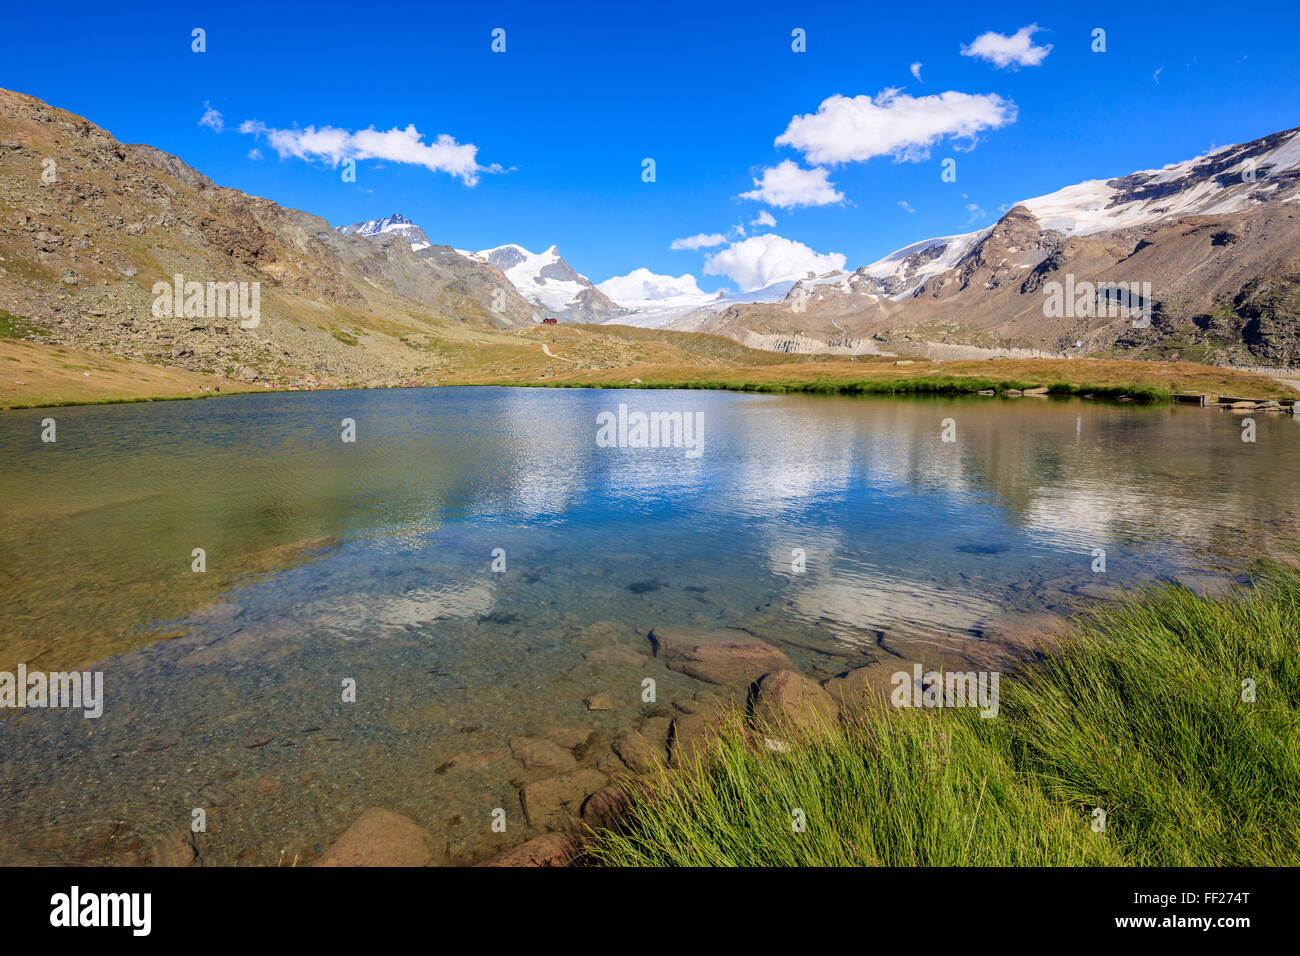 Vette innevate si riflette nel lago Stellisee, Zermatt, Canton Vallese, alpi svizzere, Svizzera, Europa Foto Stock